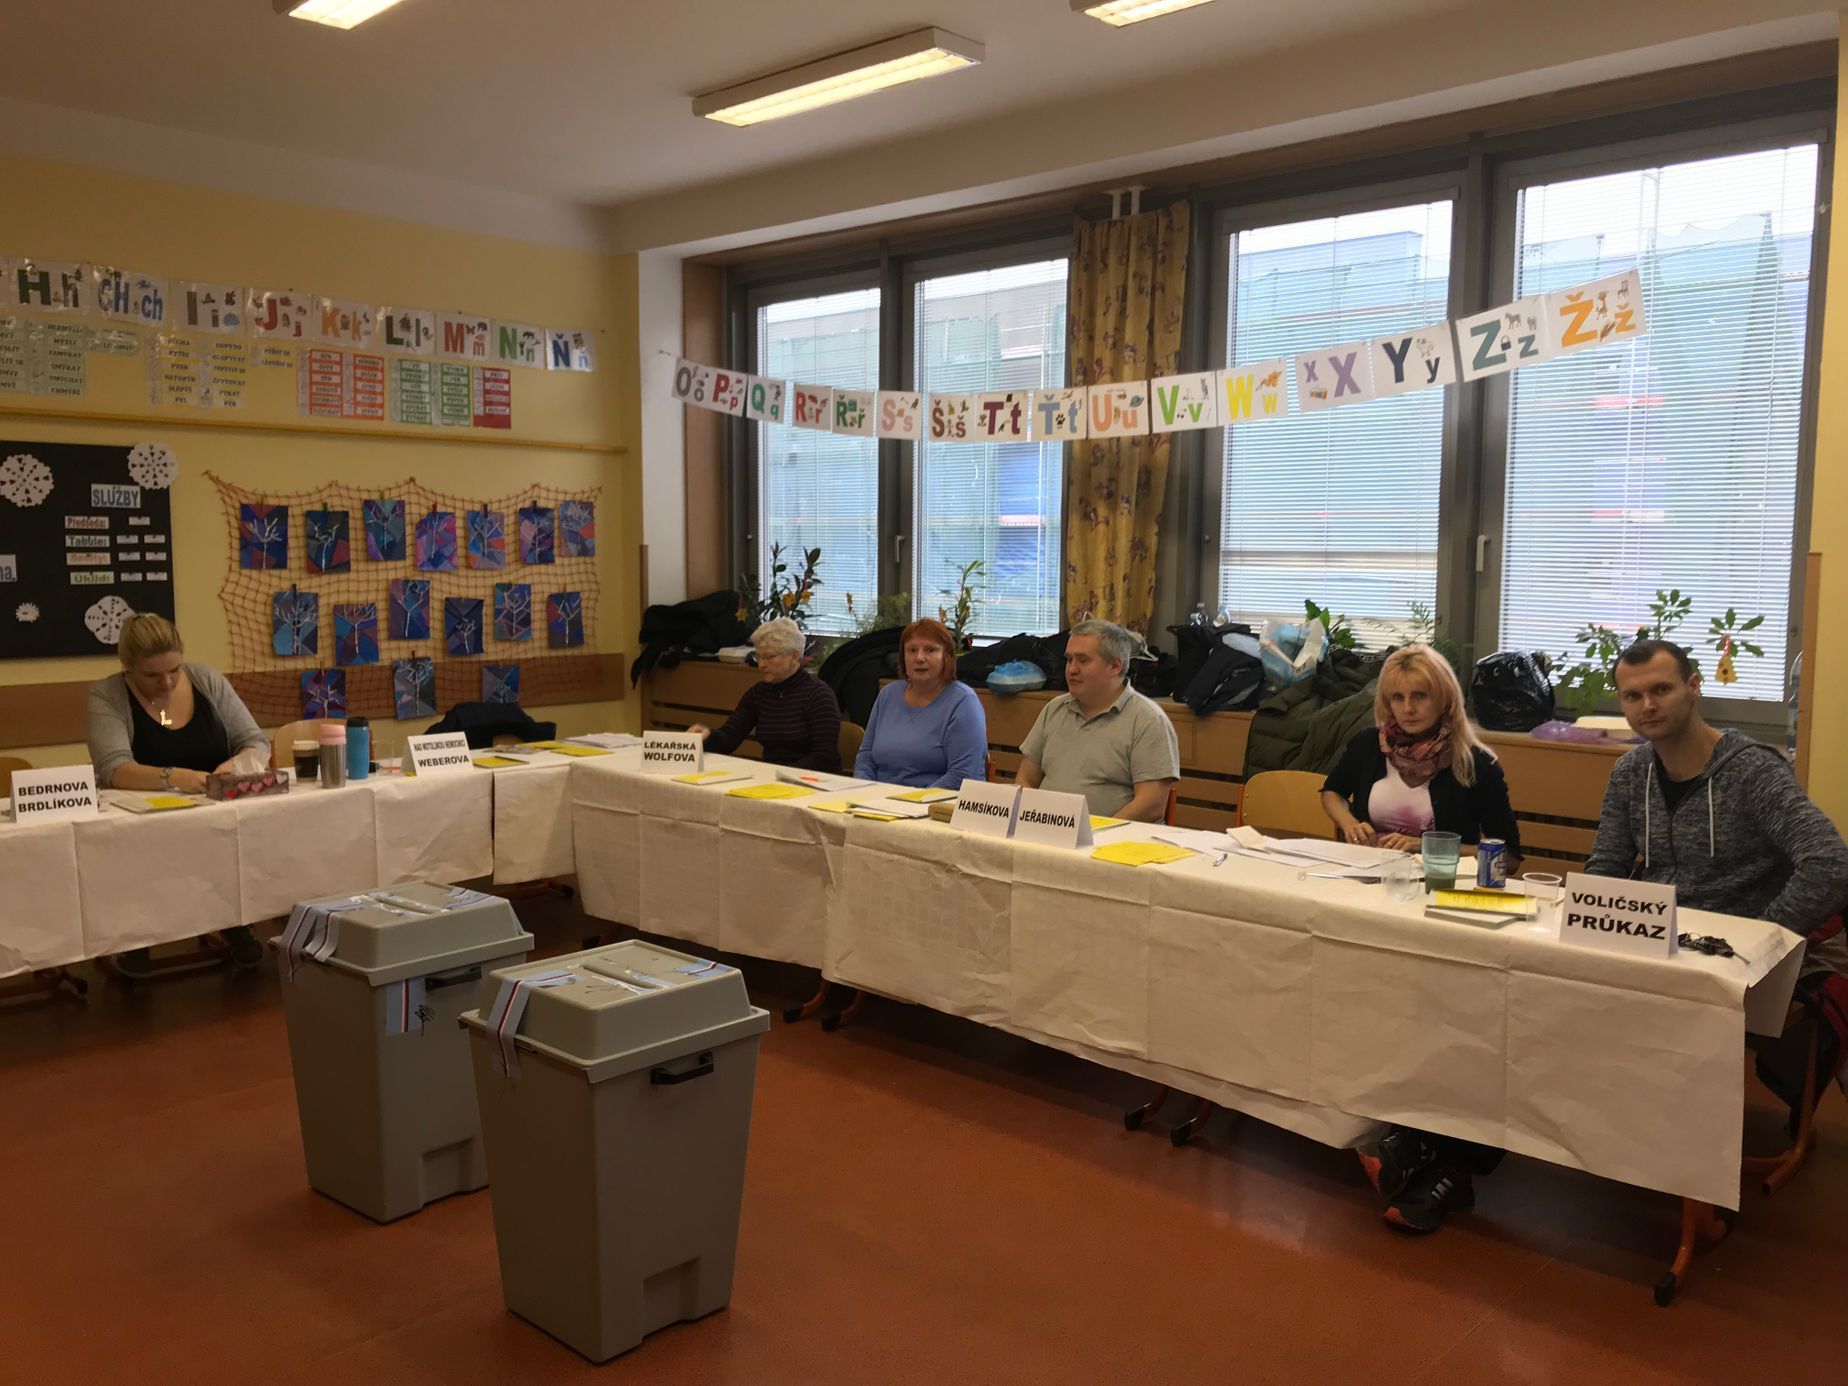 Prezidentské volby 2018, komise na ZŠ Weberova v Motole